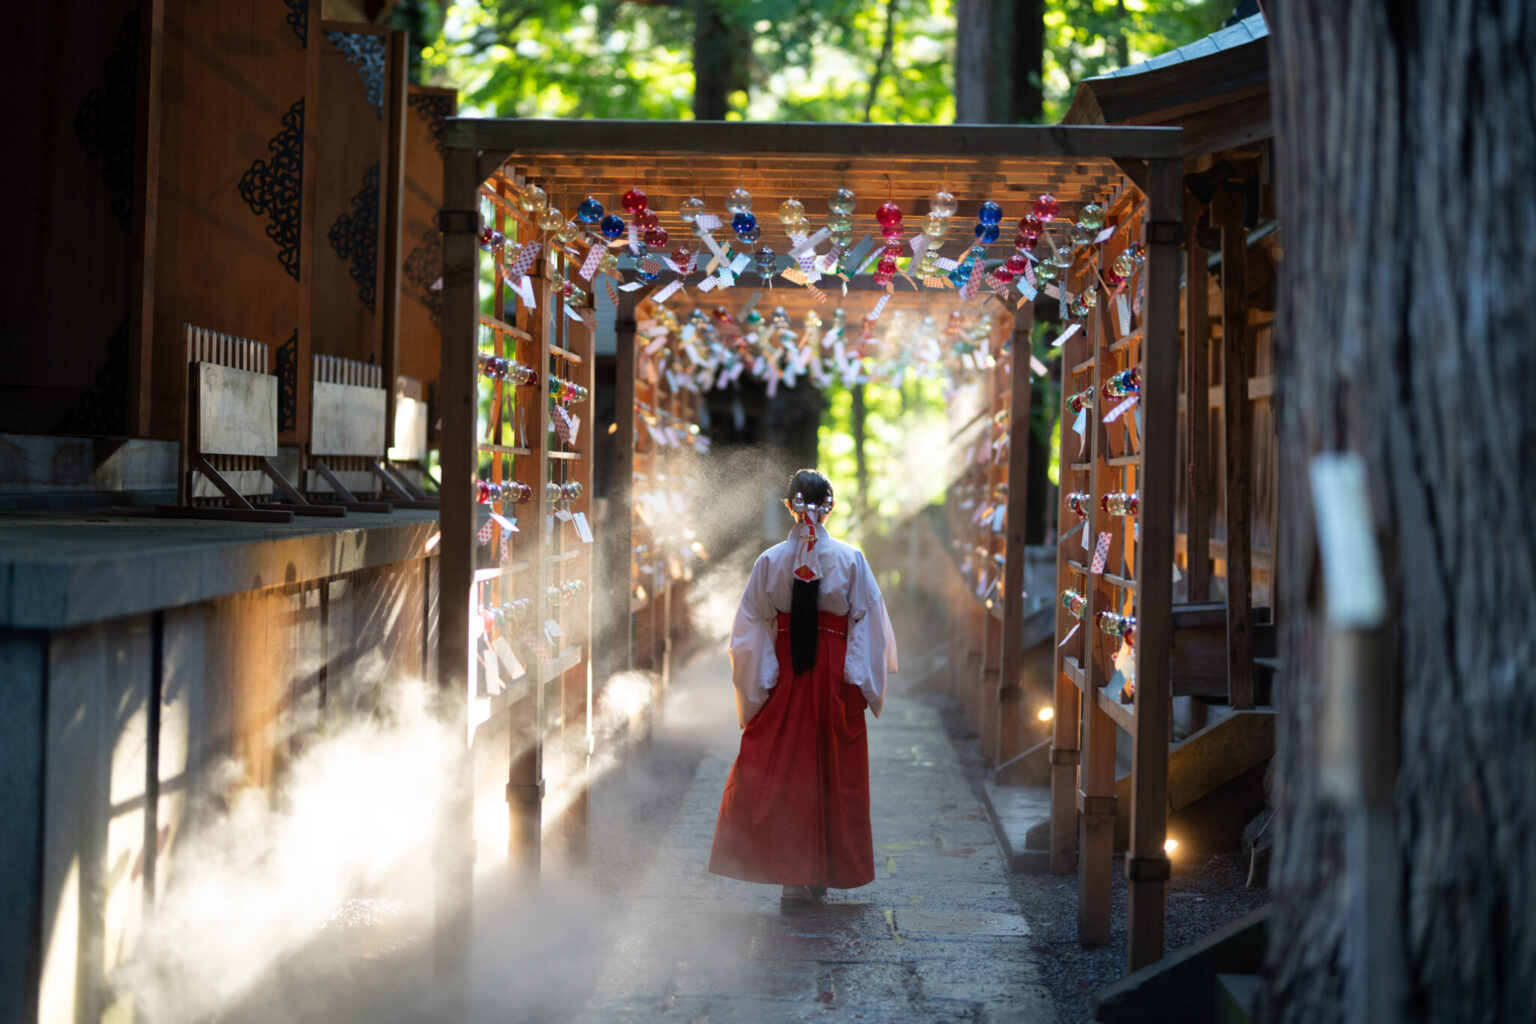 日本最初の夫婦の神様にご縁を結んでいただくなら、山形・熊野大社へ。夏の境内に流れるさわやかな風と風鈴の音色に想いを託す「かなで」も夏の風物詩。